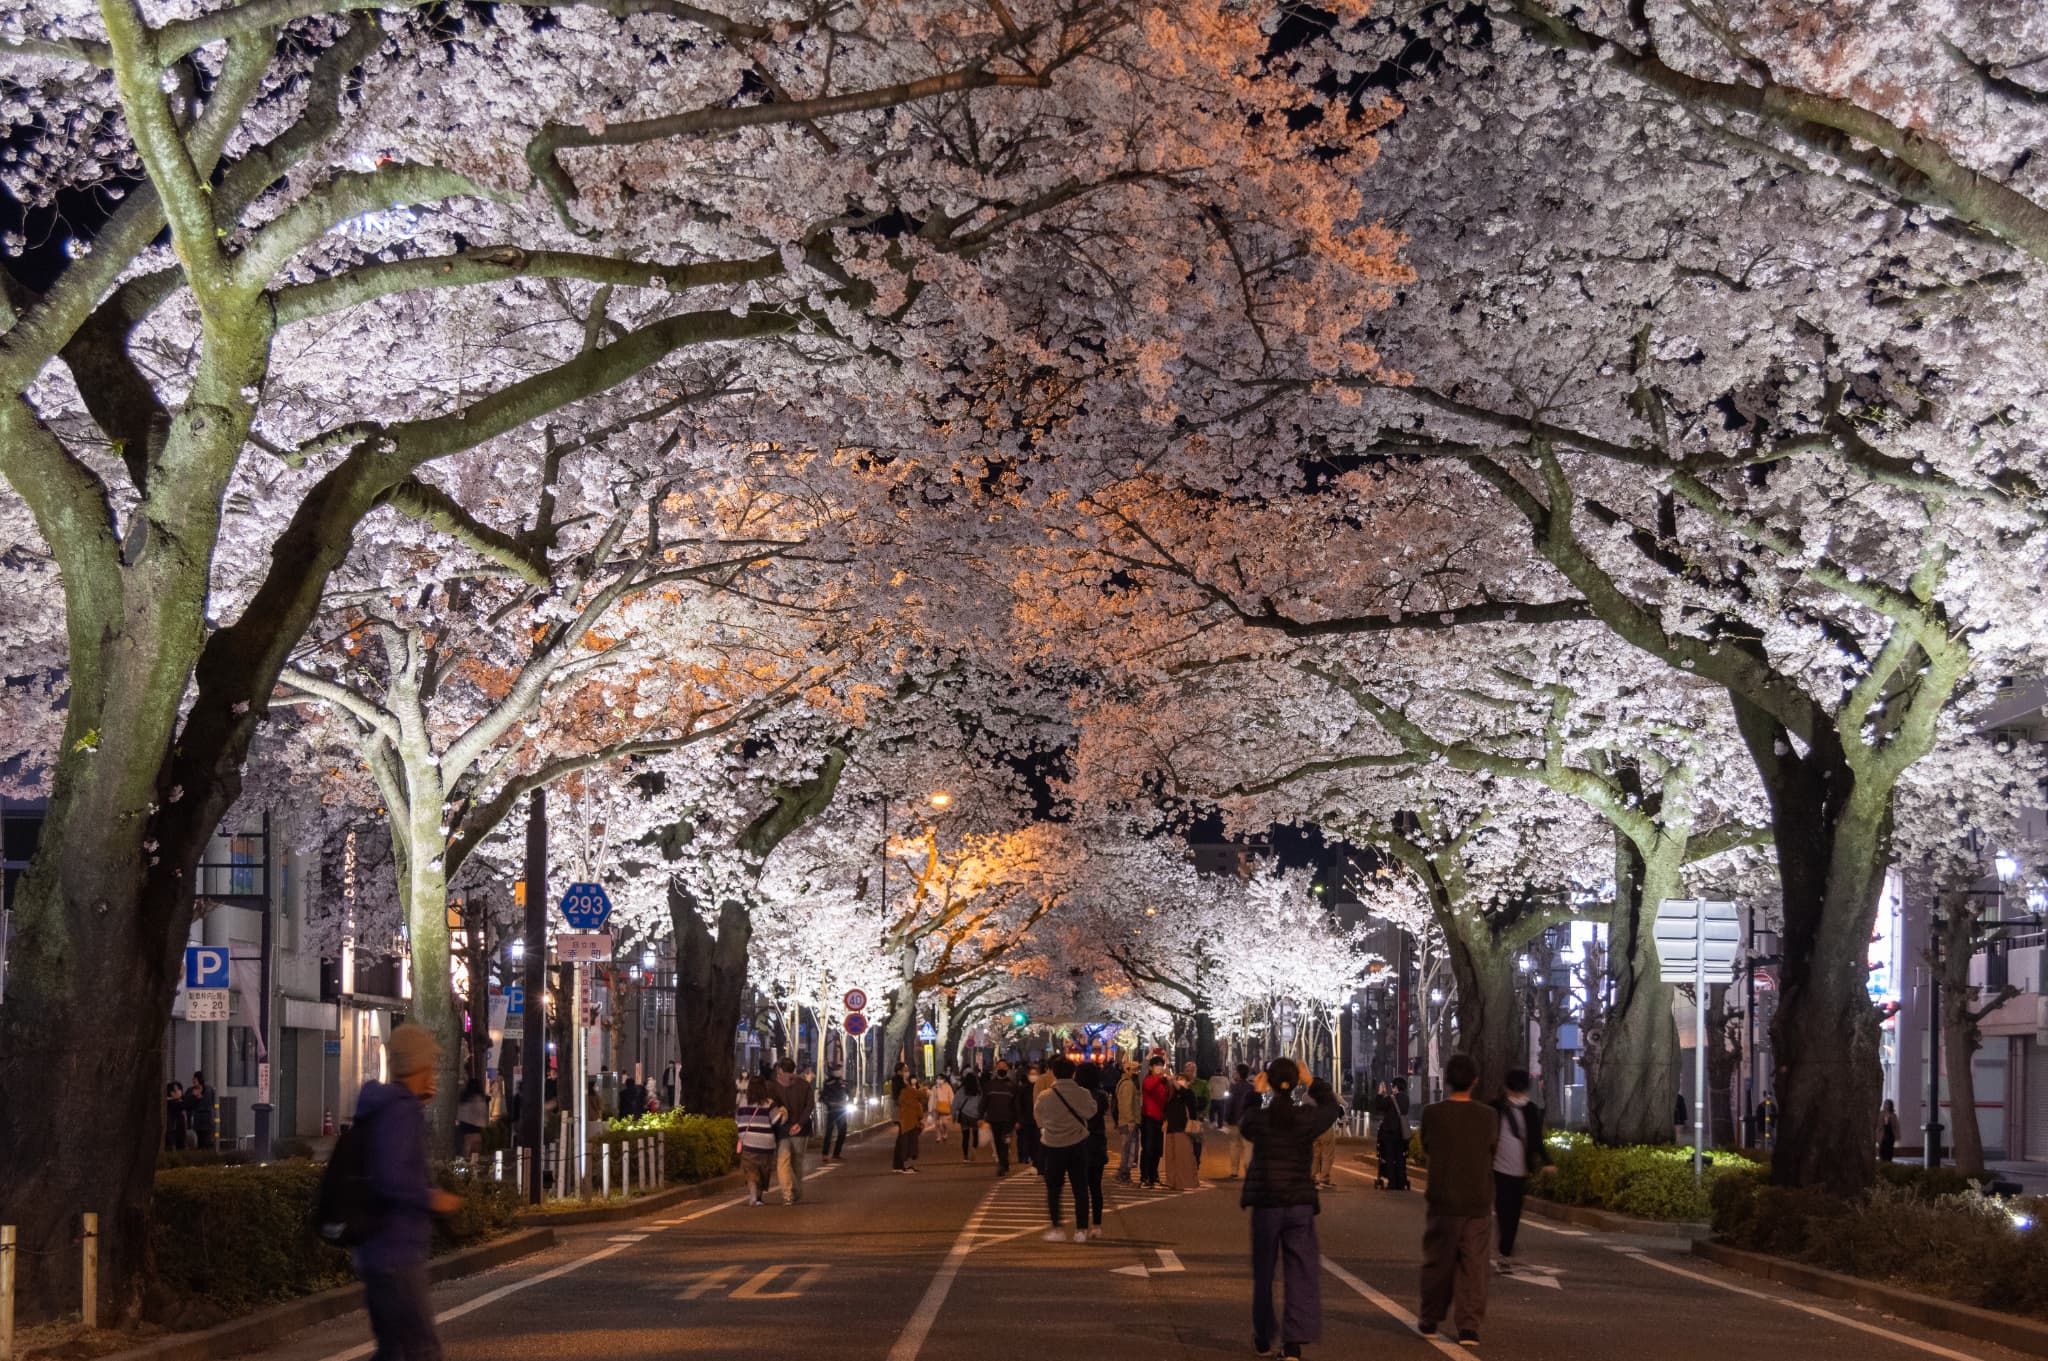 日立さくらまつり 平和通り・かみね公園の夜桜ライトアップについての情報